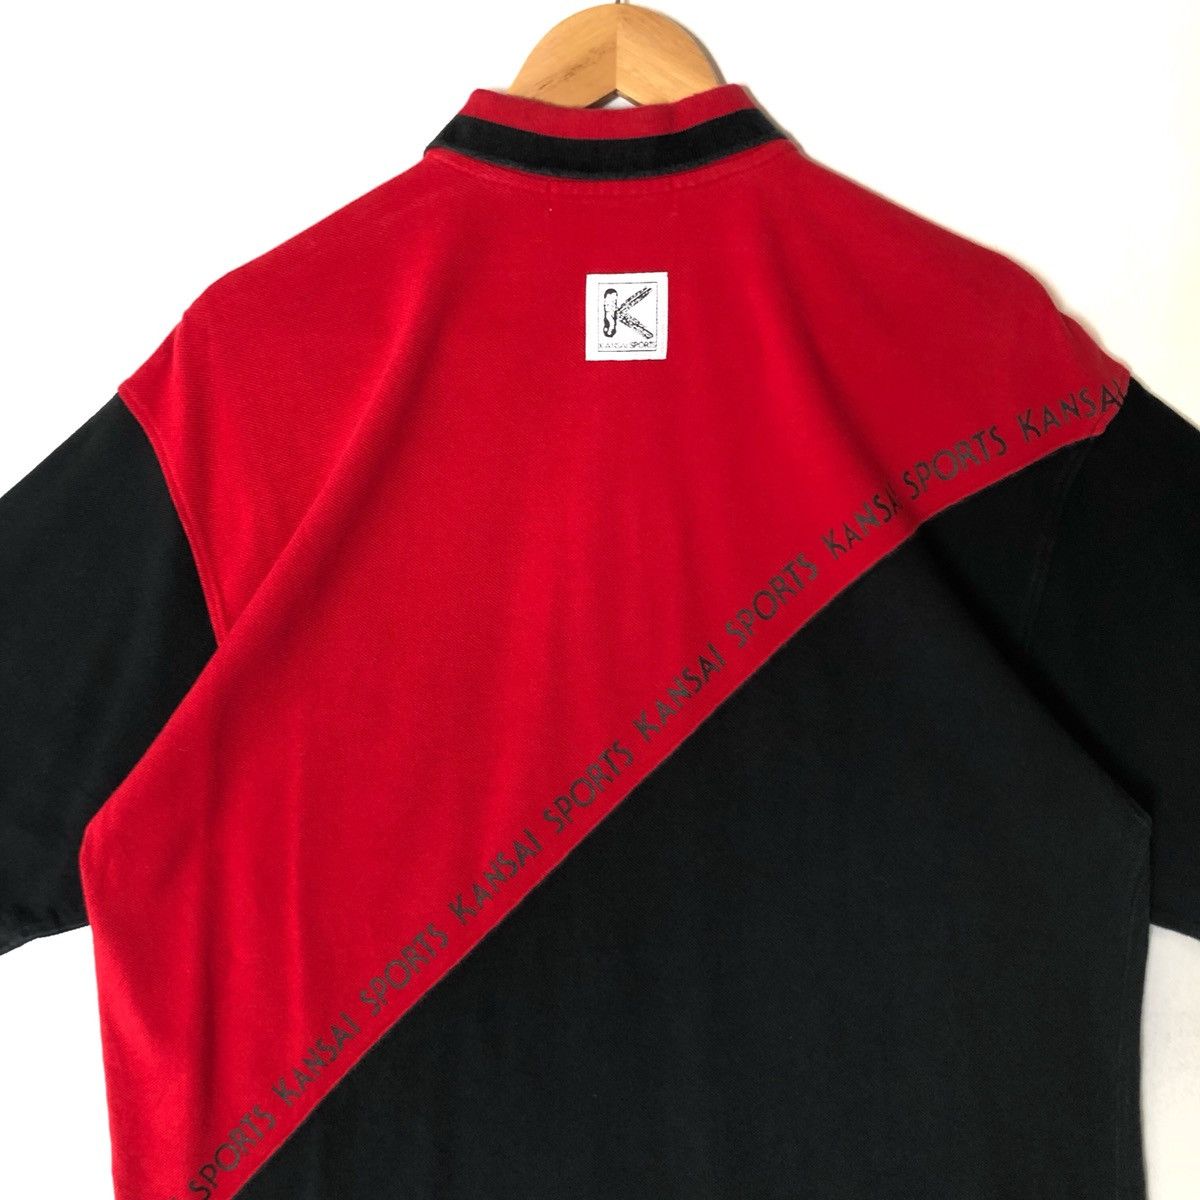 Japanese Brand Kansai Yamamoto Kansai Sports Polo Shirt Size US M / EU 48-50 / 2 - 4 Thumbnail